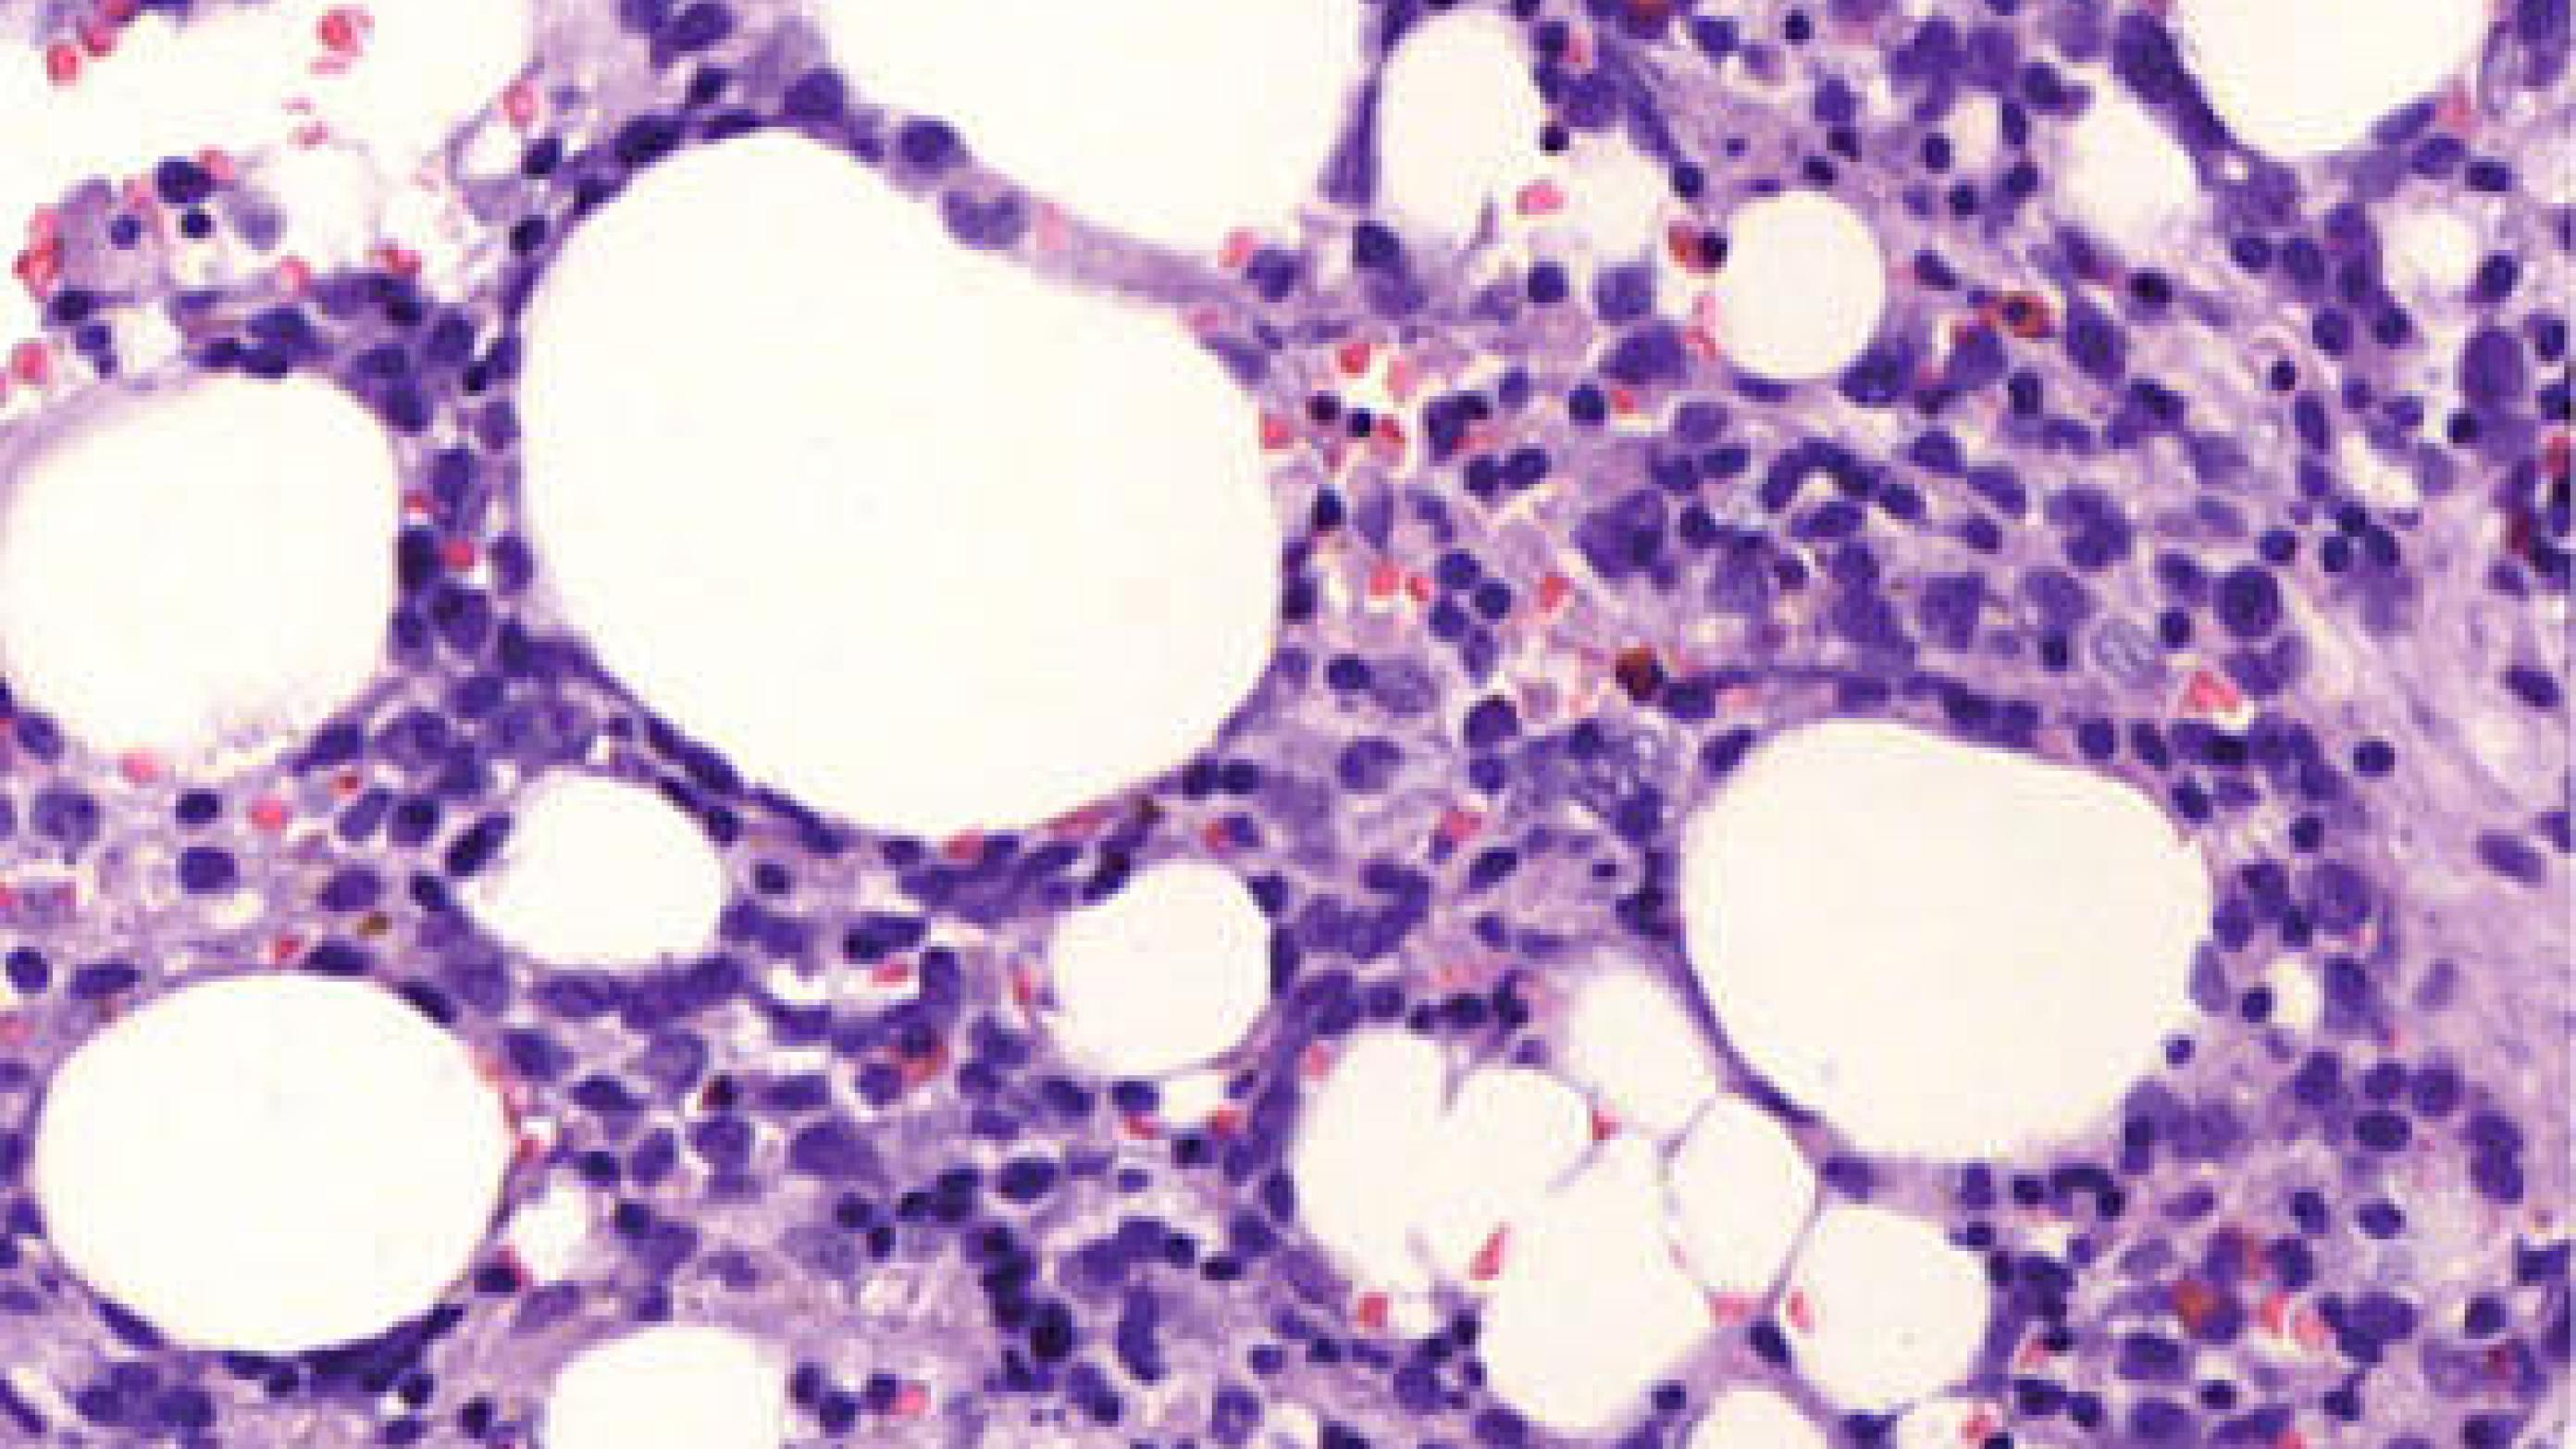 Histologisk undersøgelse af knoglemarven viste beskeden opmodning af myelopoiesen og ca. 20% differentieringskompleks (CD)34-, CD117- og myeloperoxidasepositive blastceller. Hæmatoxylin-eosin-farvet snit fra cristabiopsien, × 20.